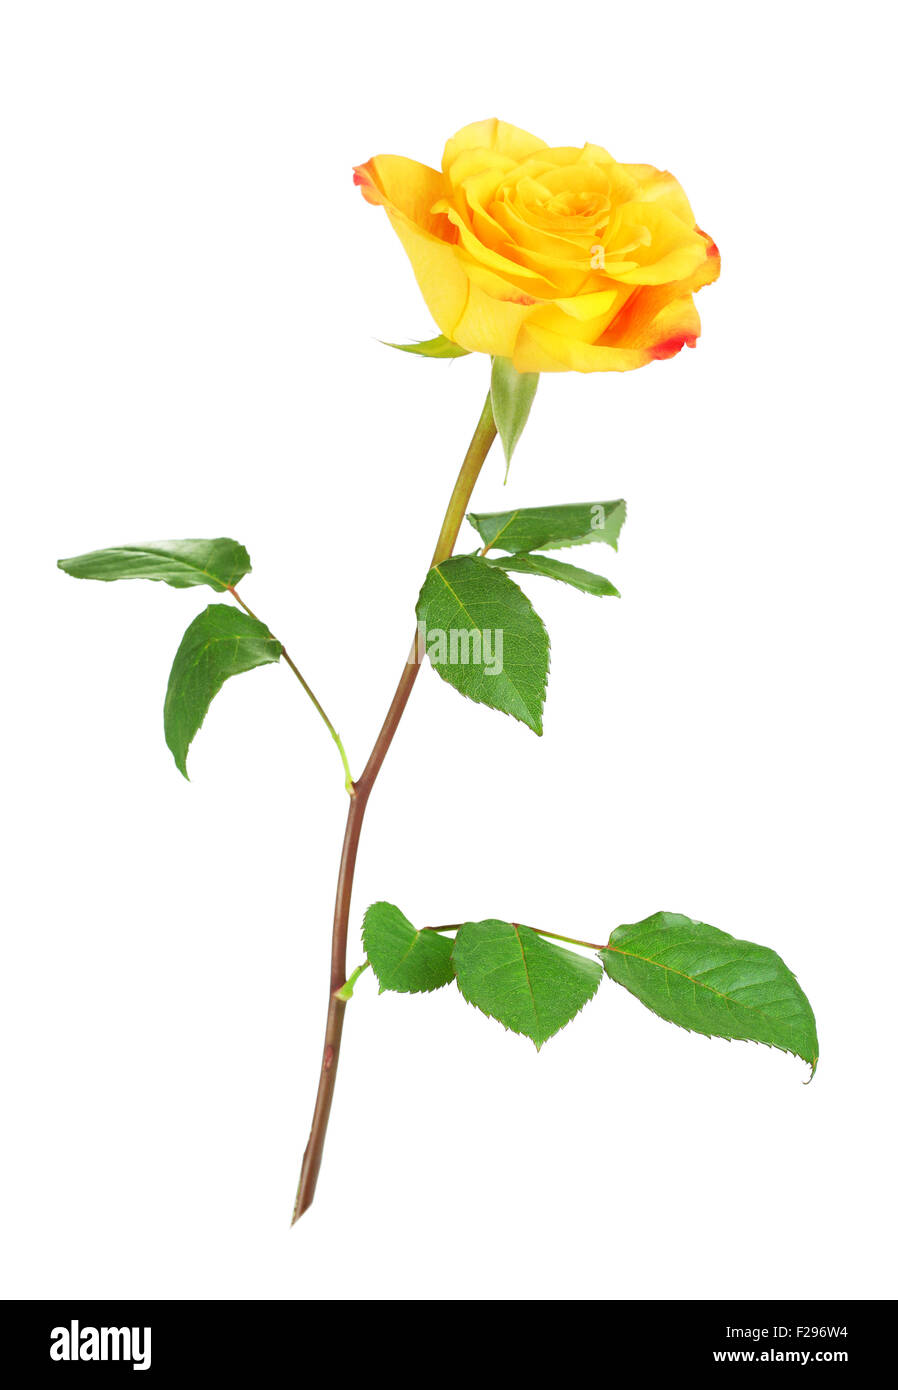 Rose jaune fleur, isolé sur fond blanc Banque D'Images